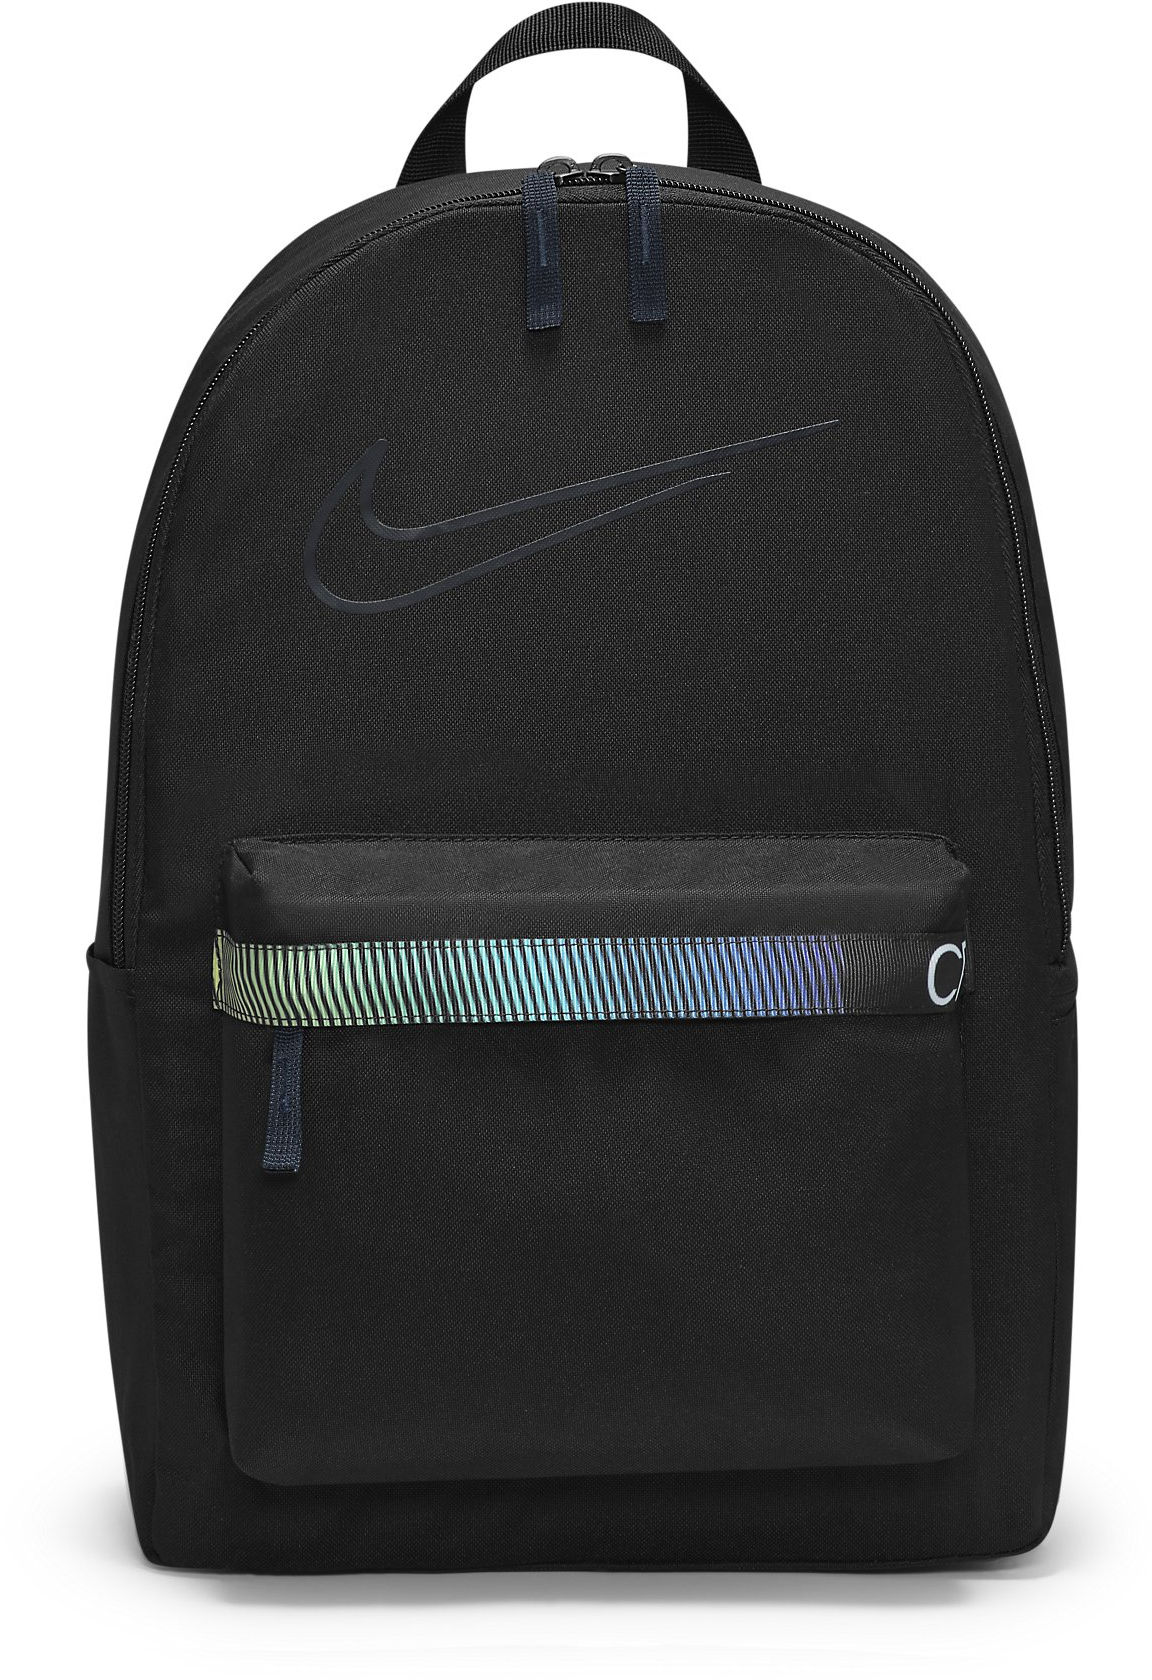 Dětský batoh Nike CR7